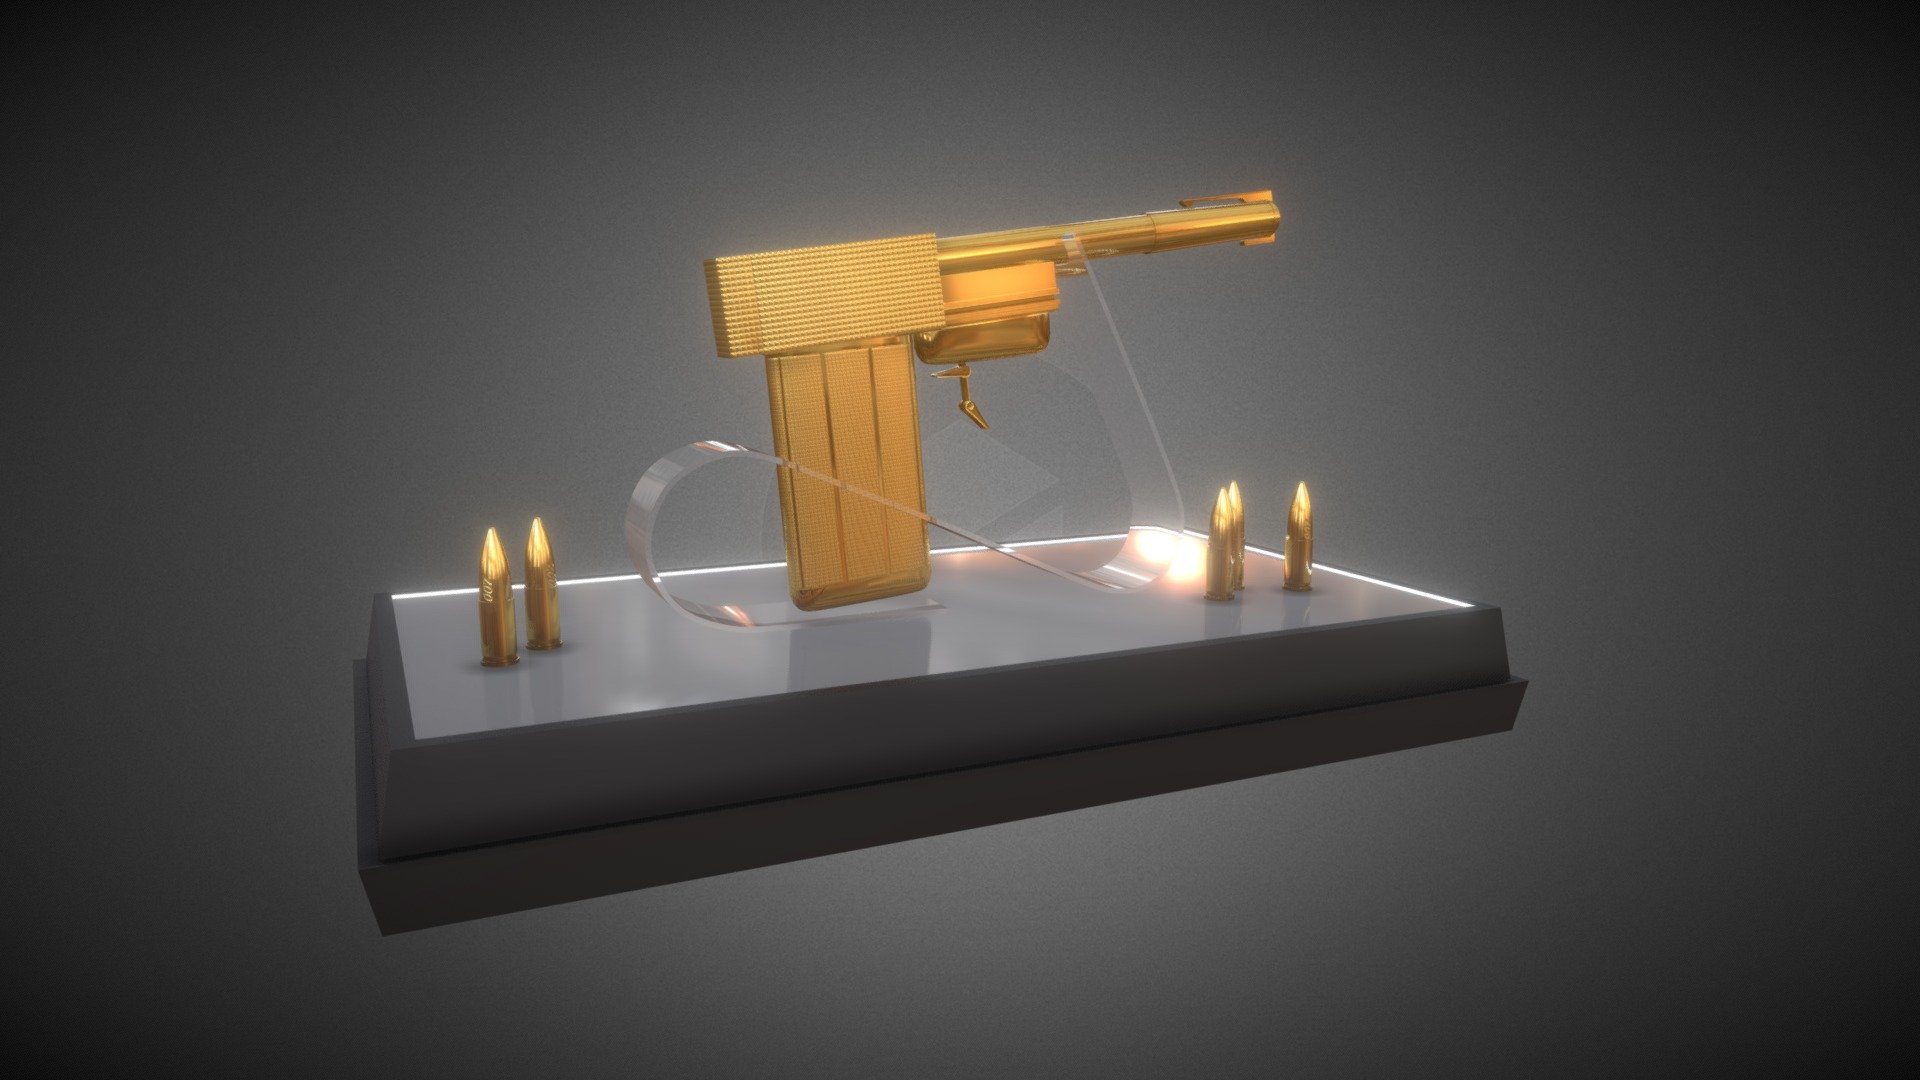 Golden Gun 007 Pistol